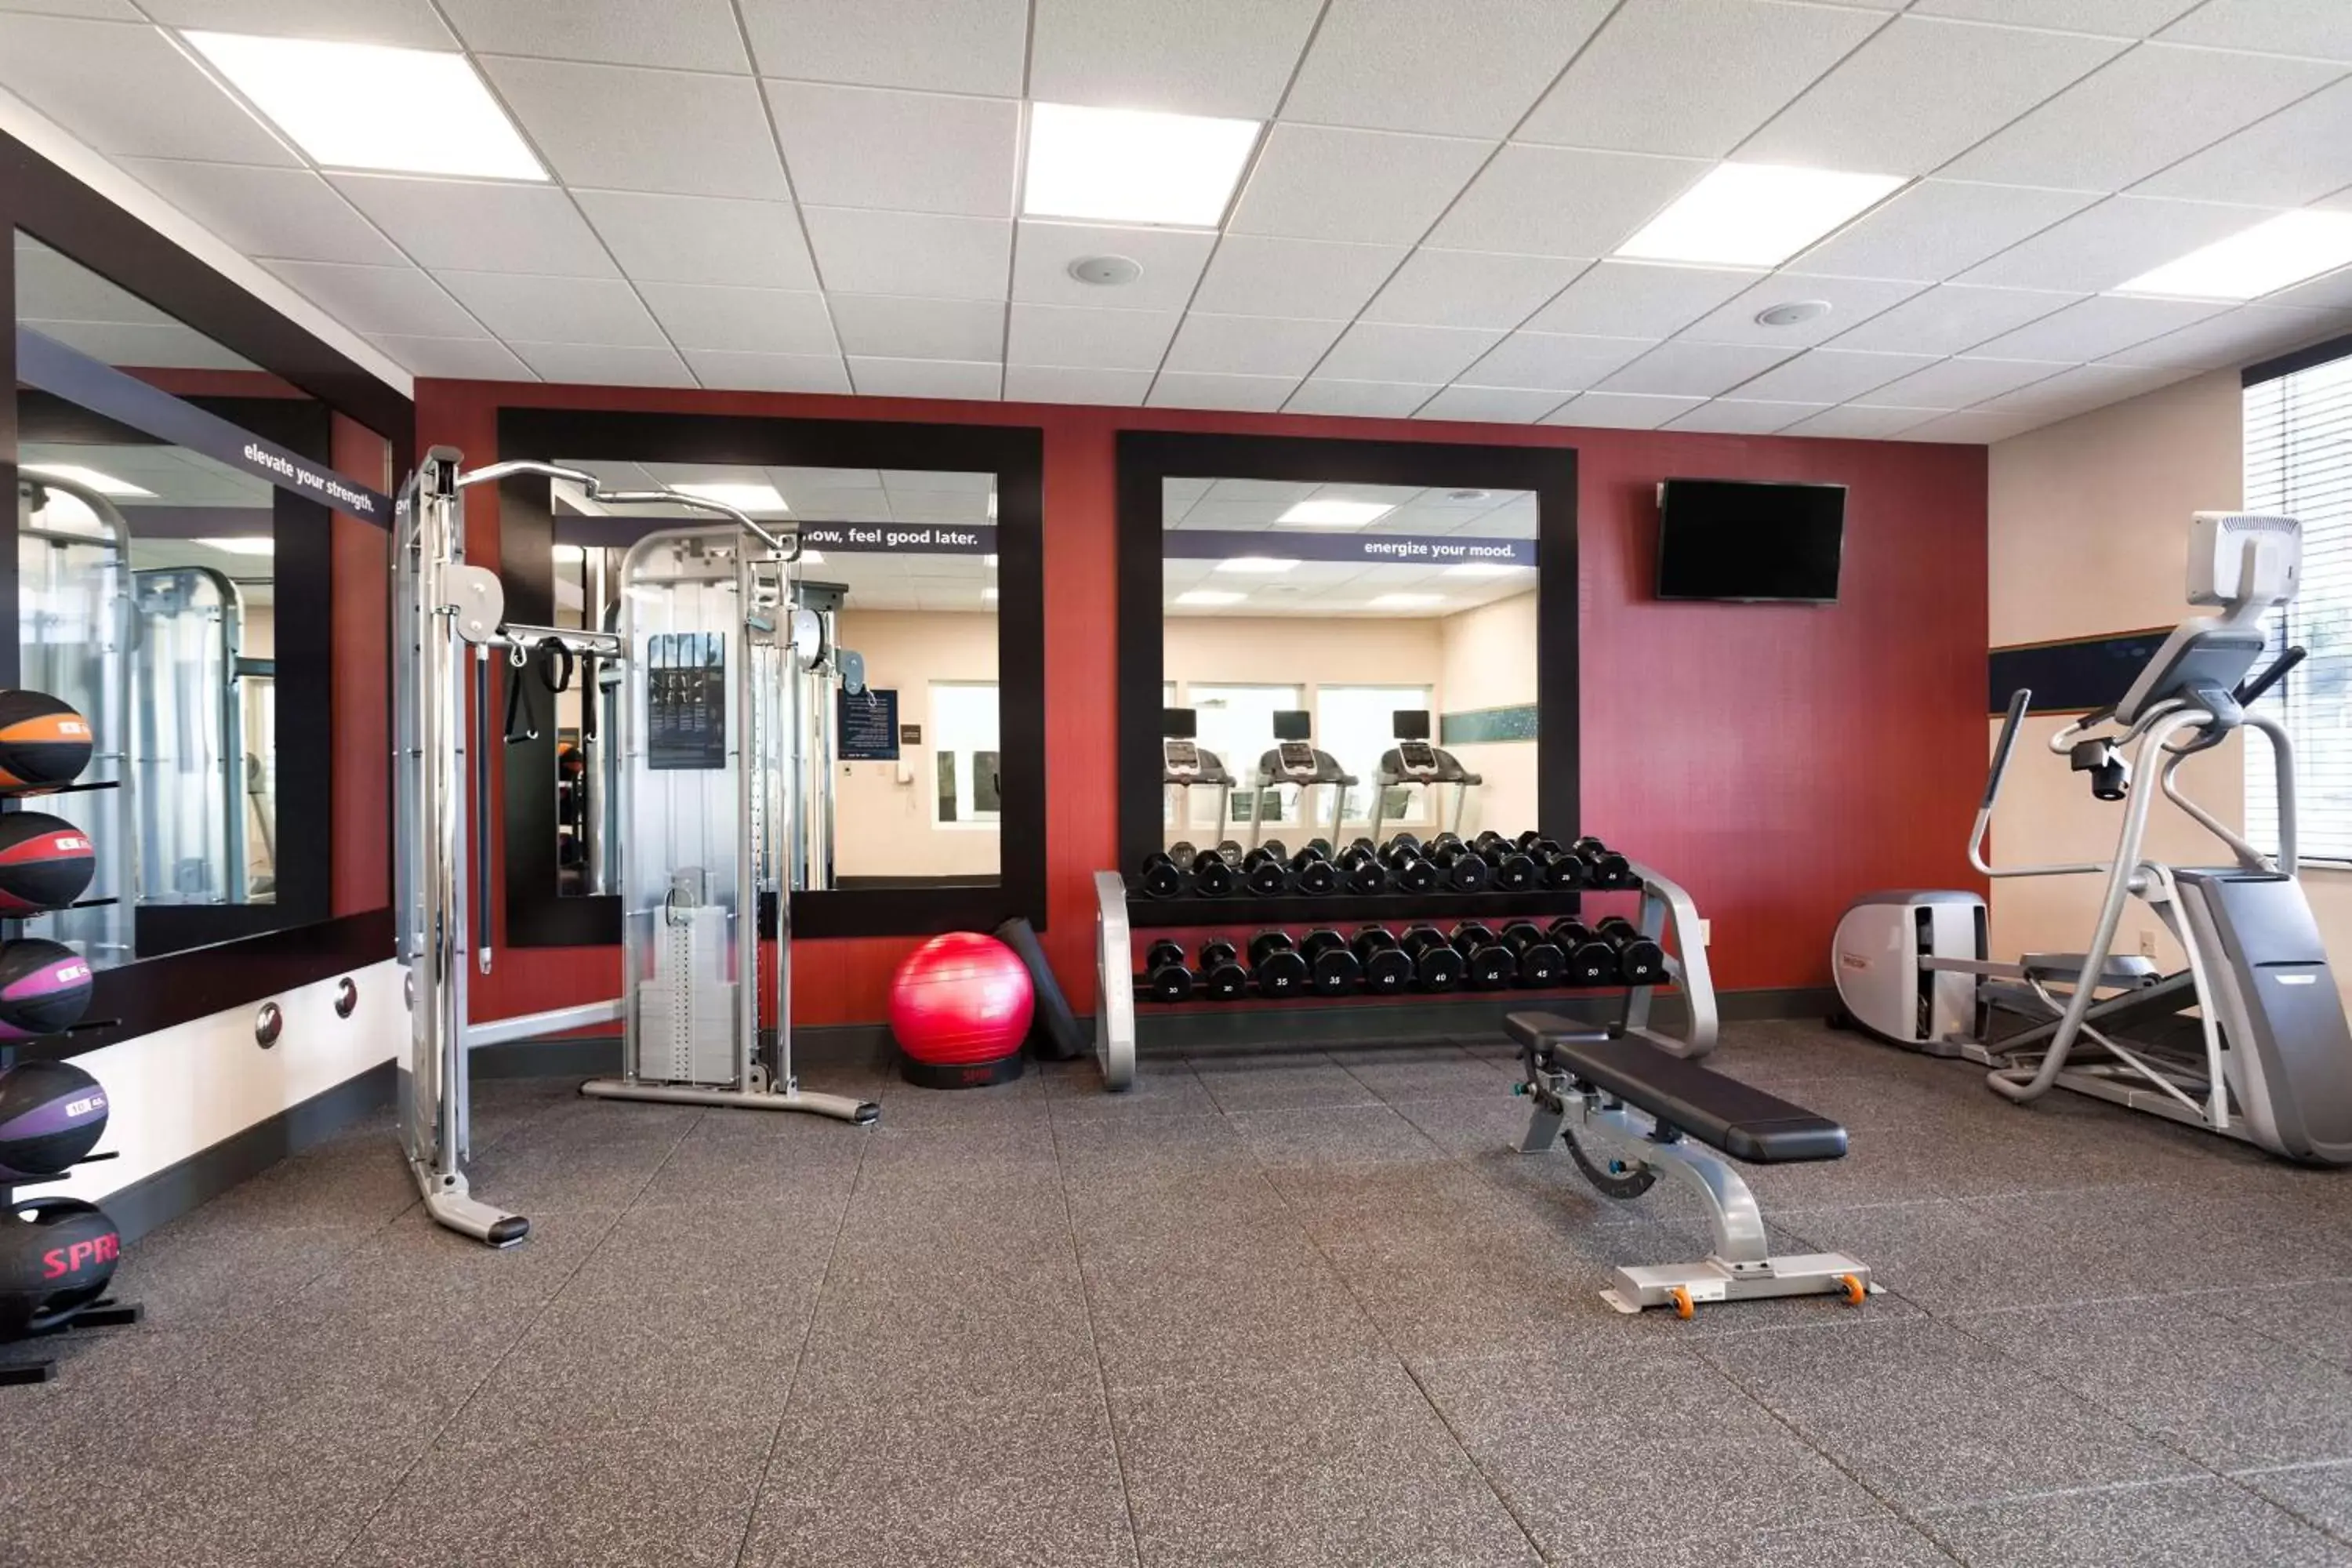 Fitness centre/facilities, Fitness Center/Facilities in Hampton Inn Lewiston-Auburn